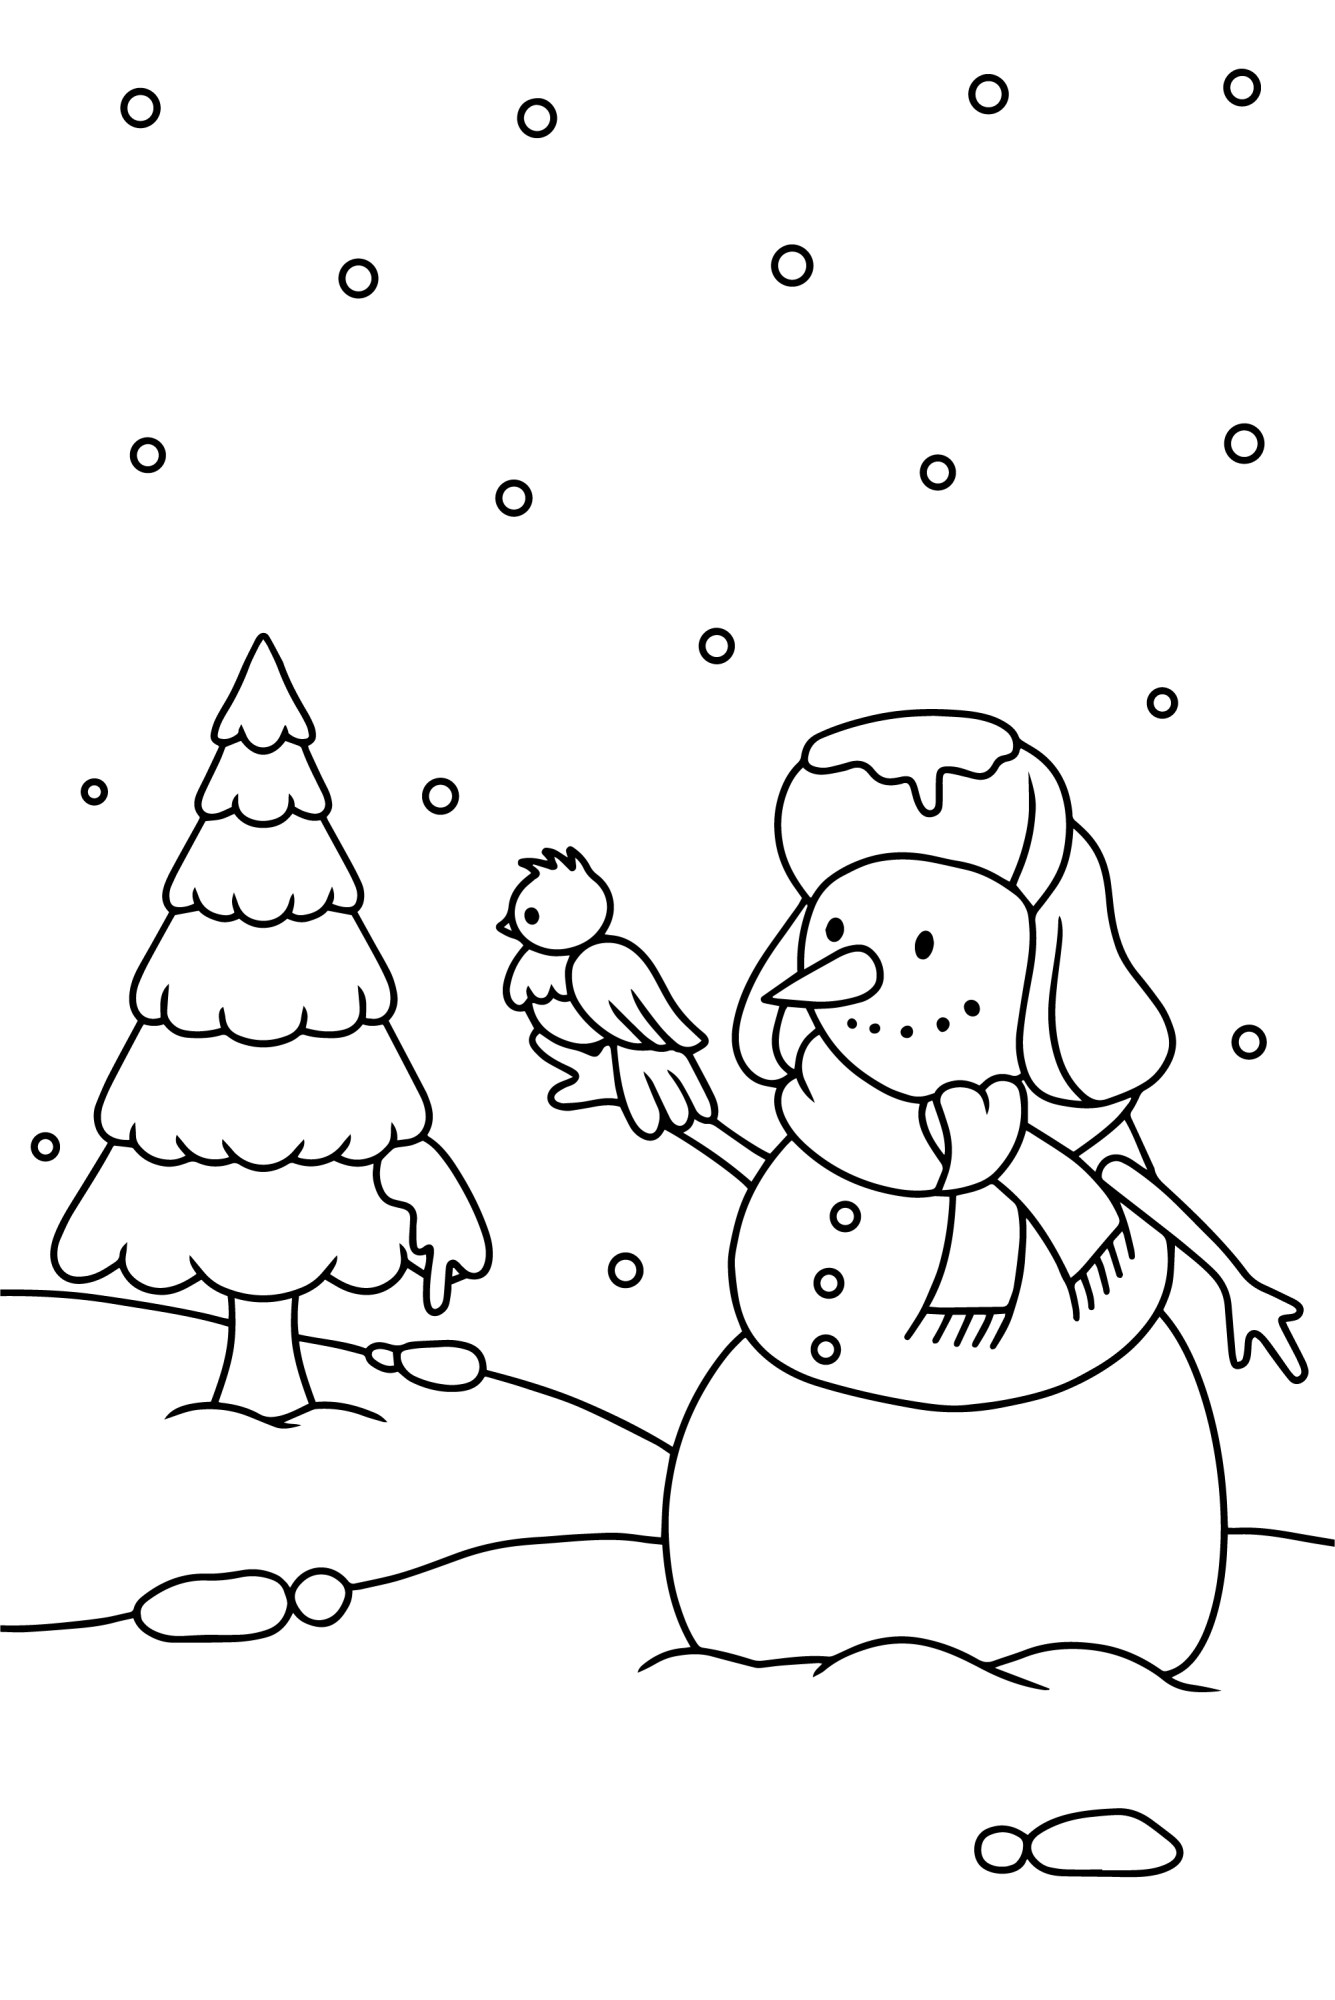 Раскраска для детей: милый снеговик с птичкой на фоне елки в снегу